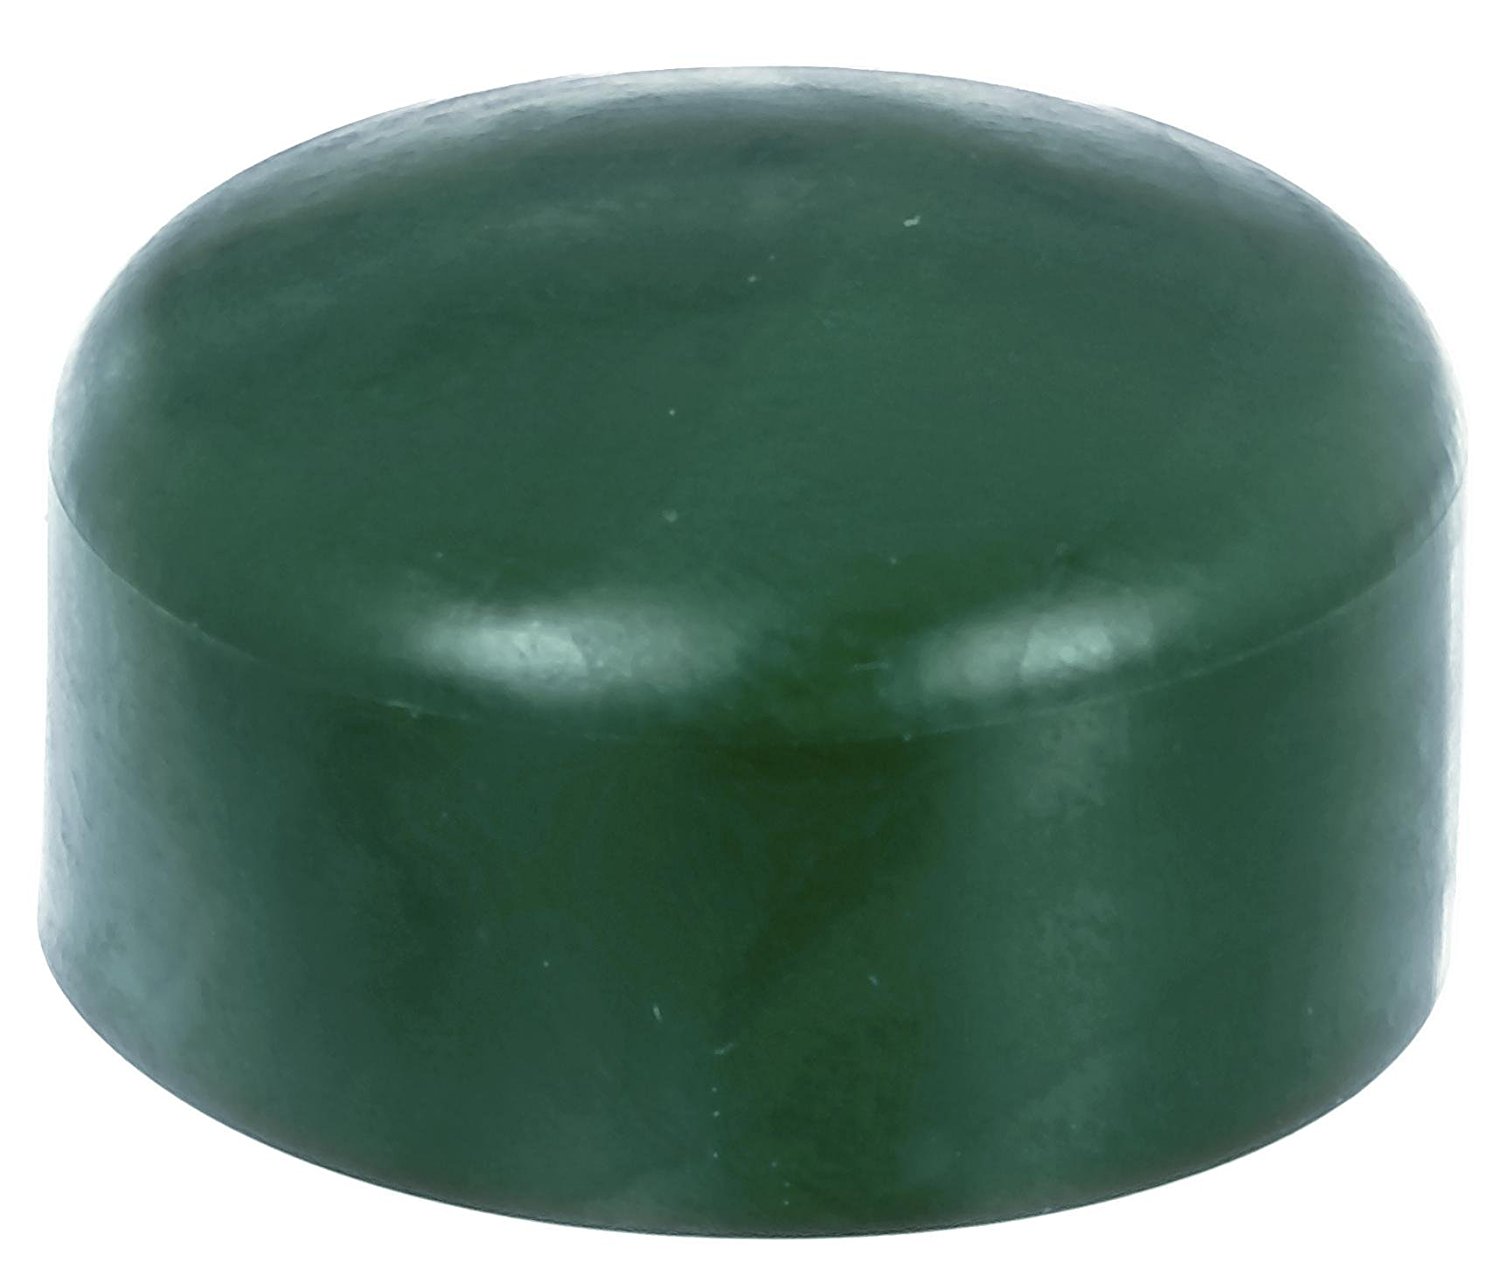 Zaunkappe grün 34-35 mm, Pfostenkappe für runde Metallpfosten, grün, Rohrkappen, Abdeckkappe für Zau